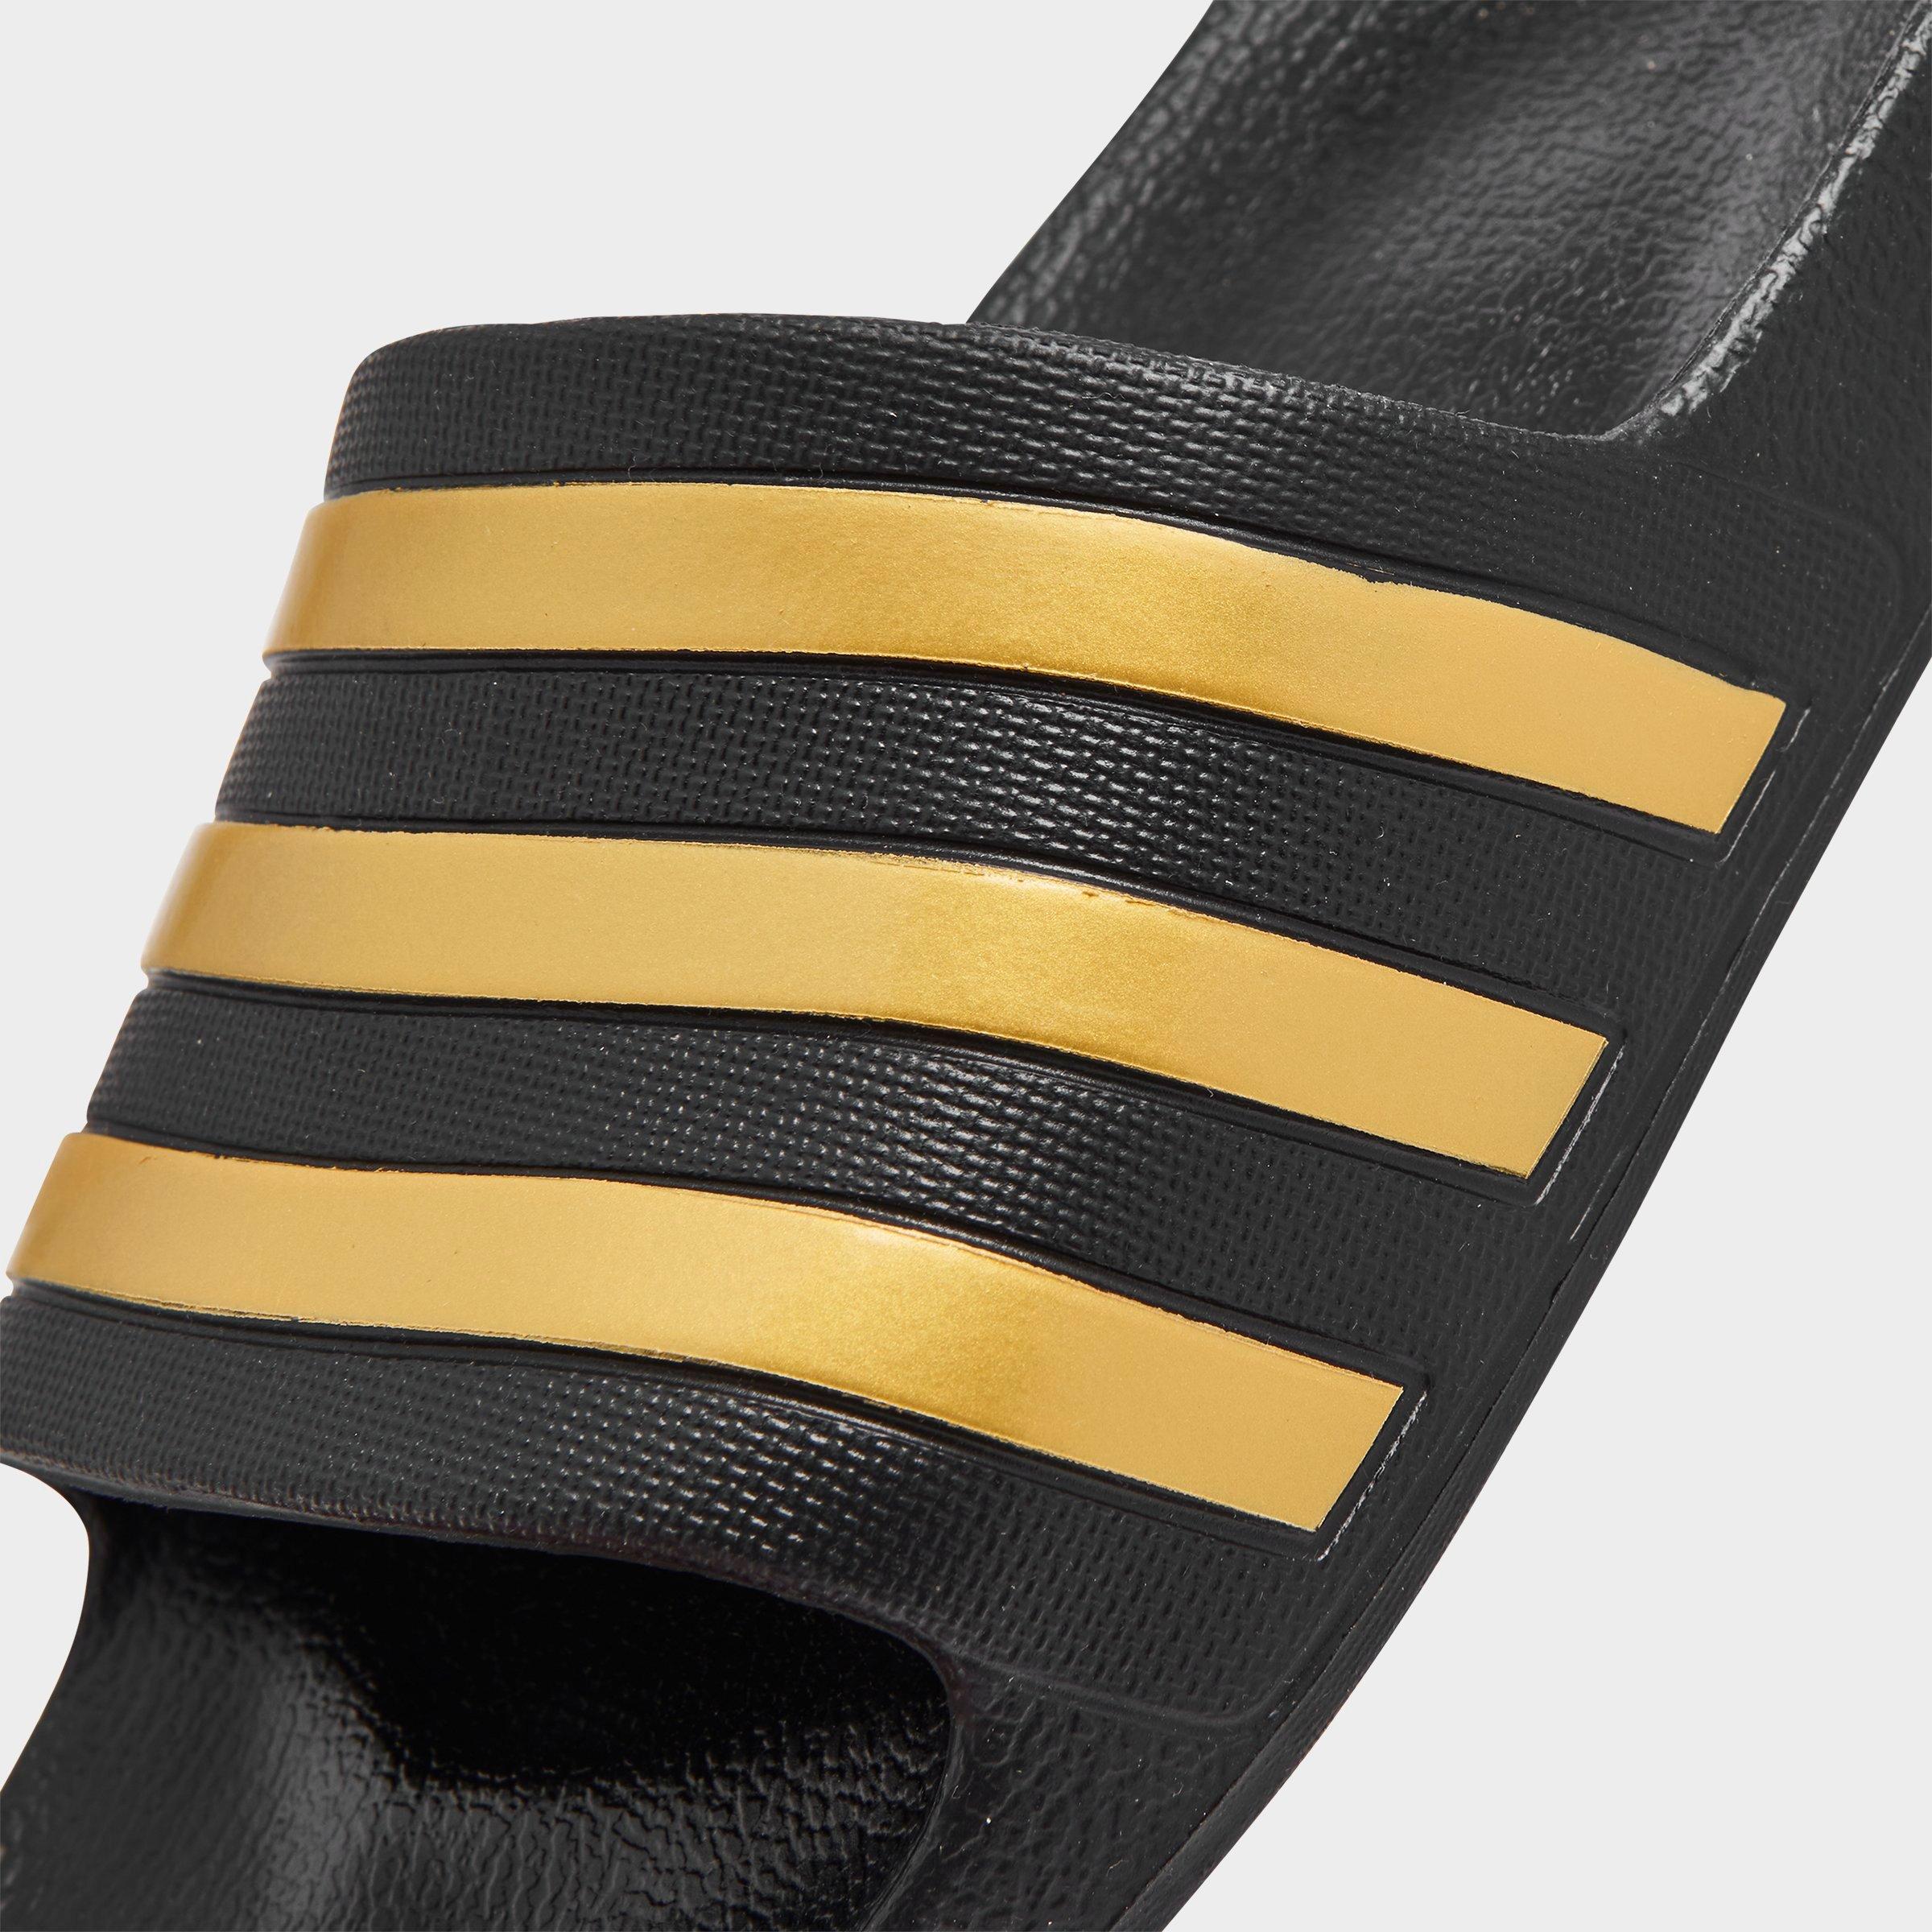 adidas adilette aqua slide sandal